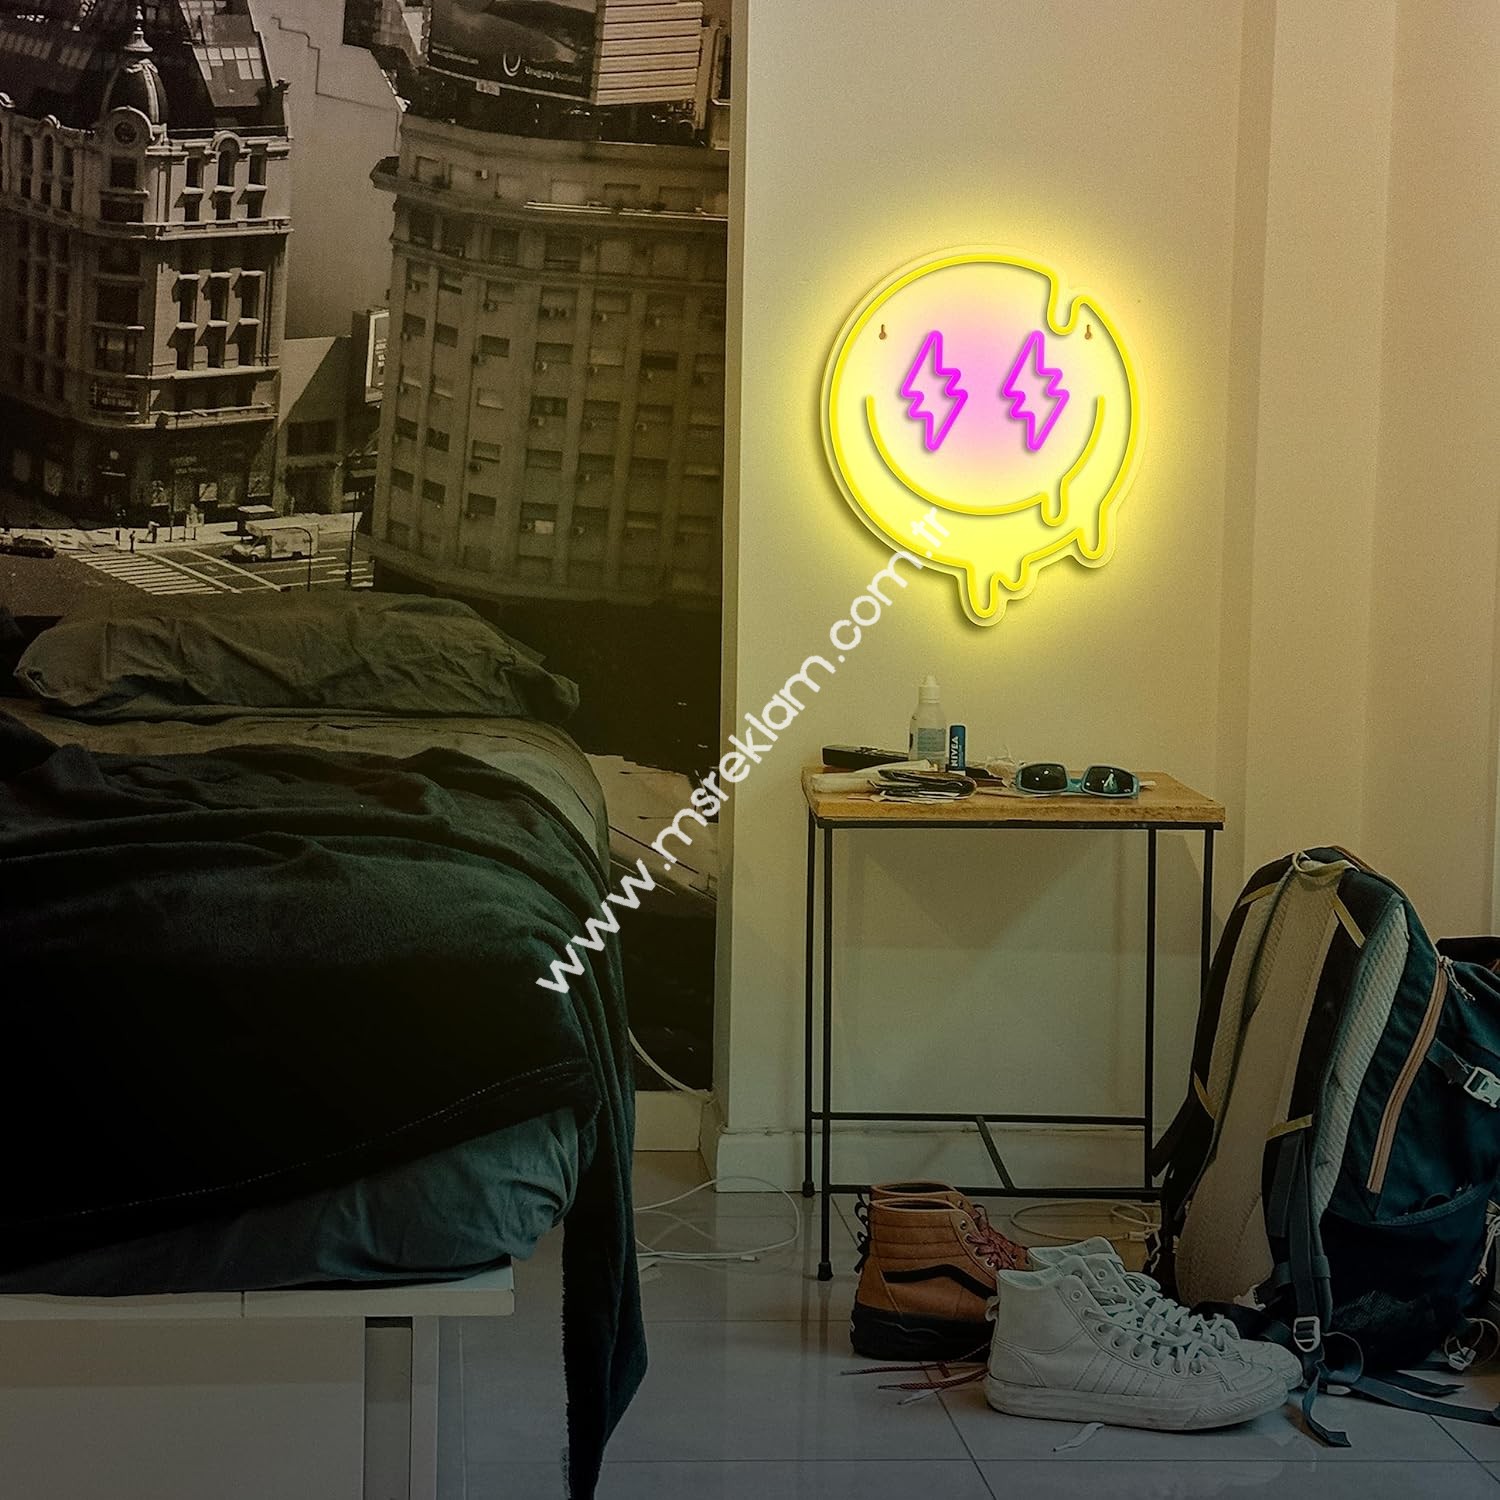 Eriyen Gülen Yüz (Melting Smile Face) Neon Led Tabela